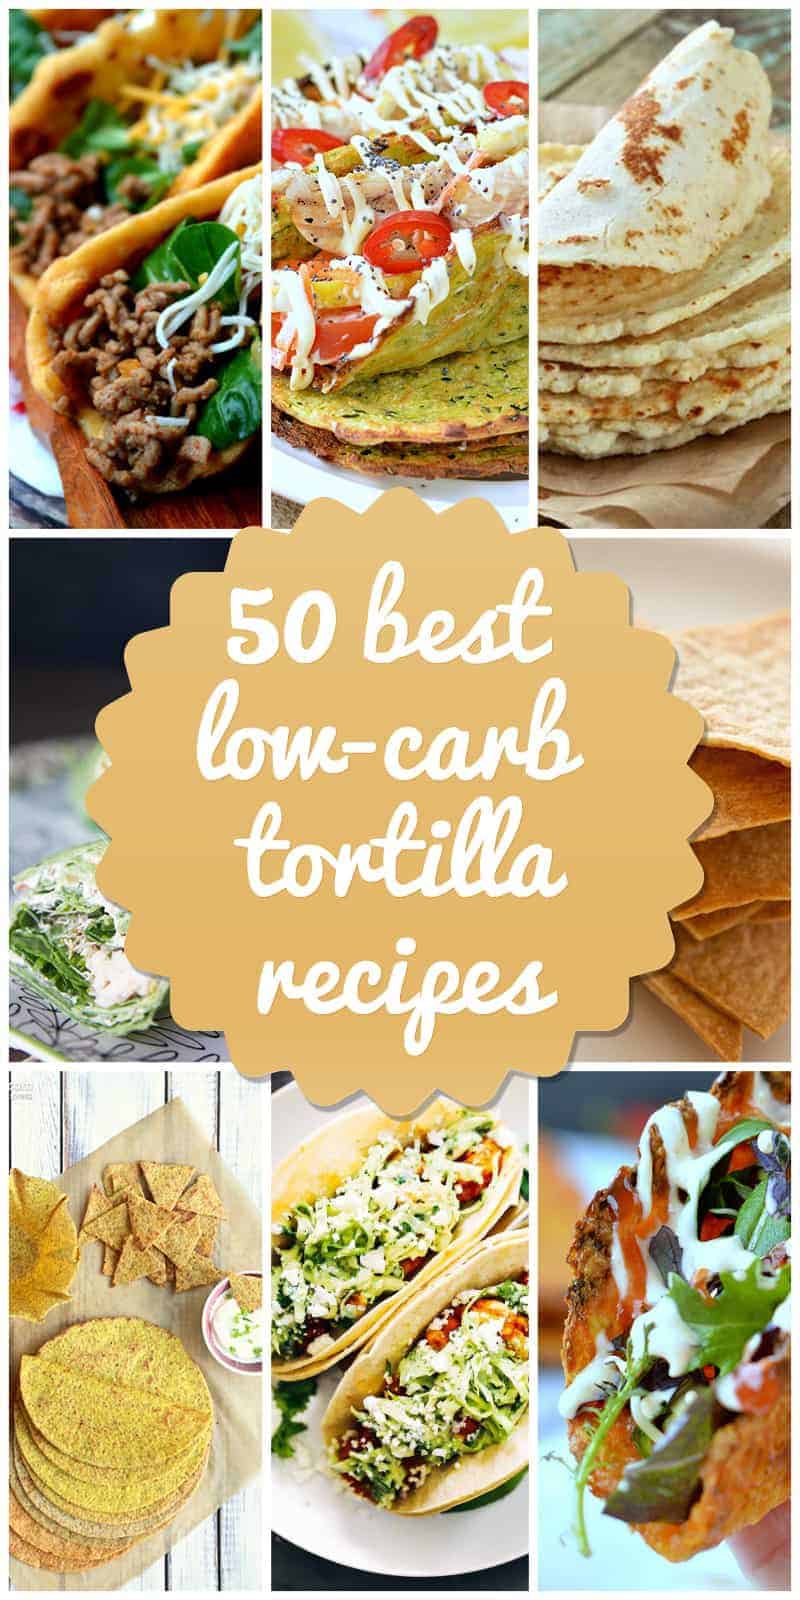 Low-Carb Toritllas Recipes